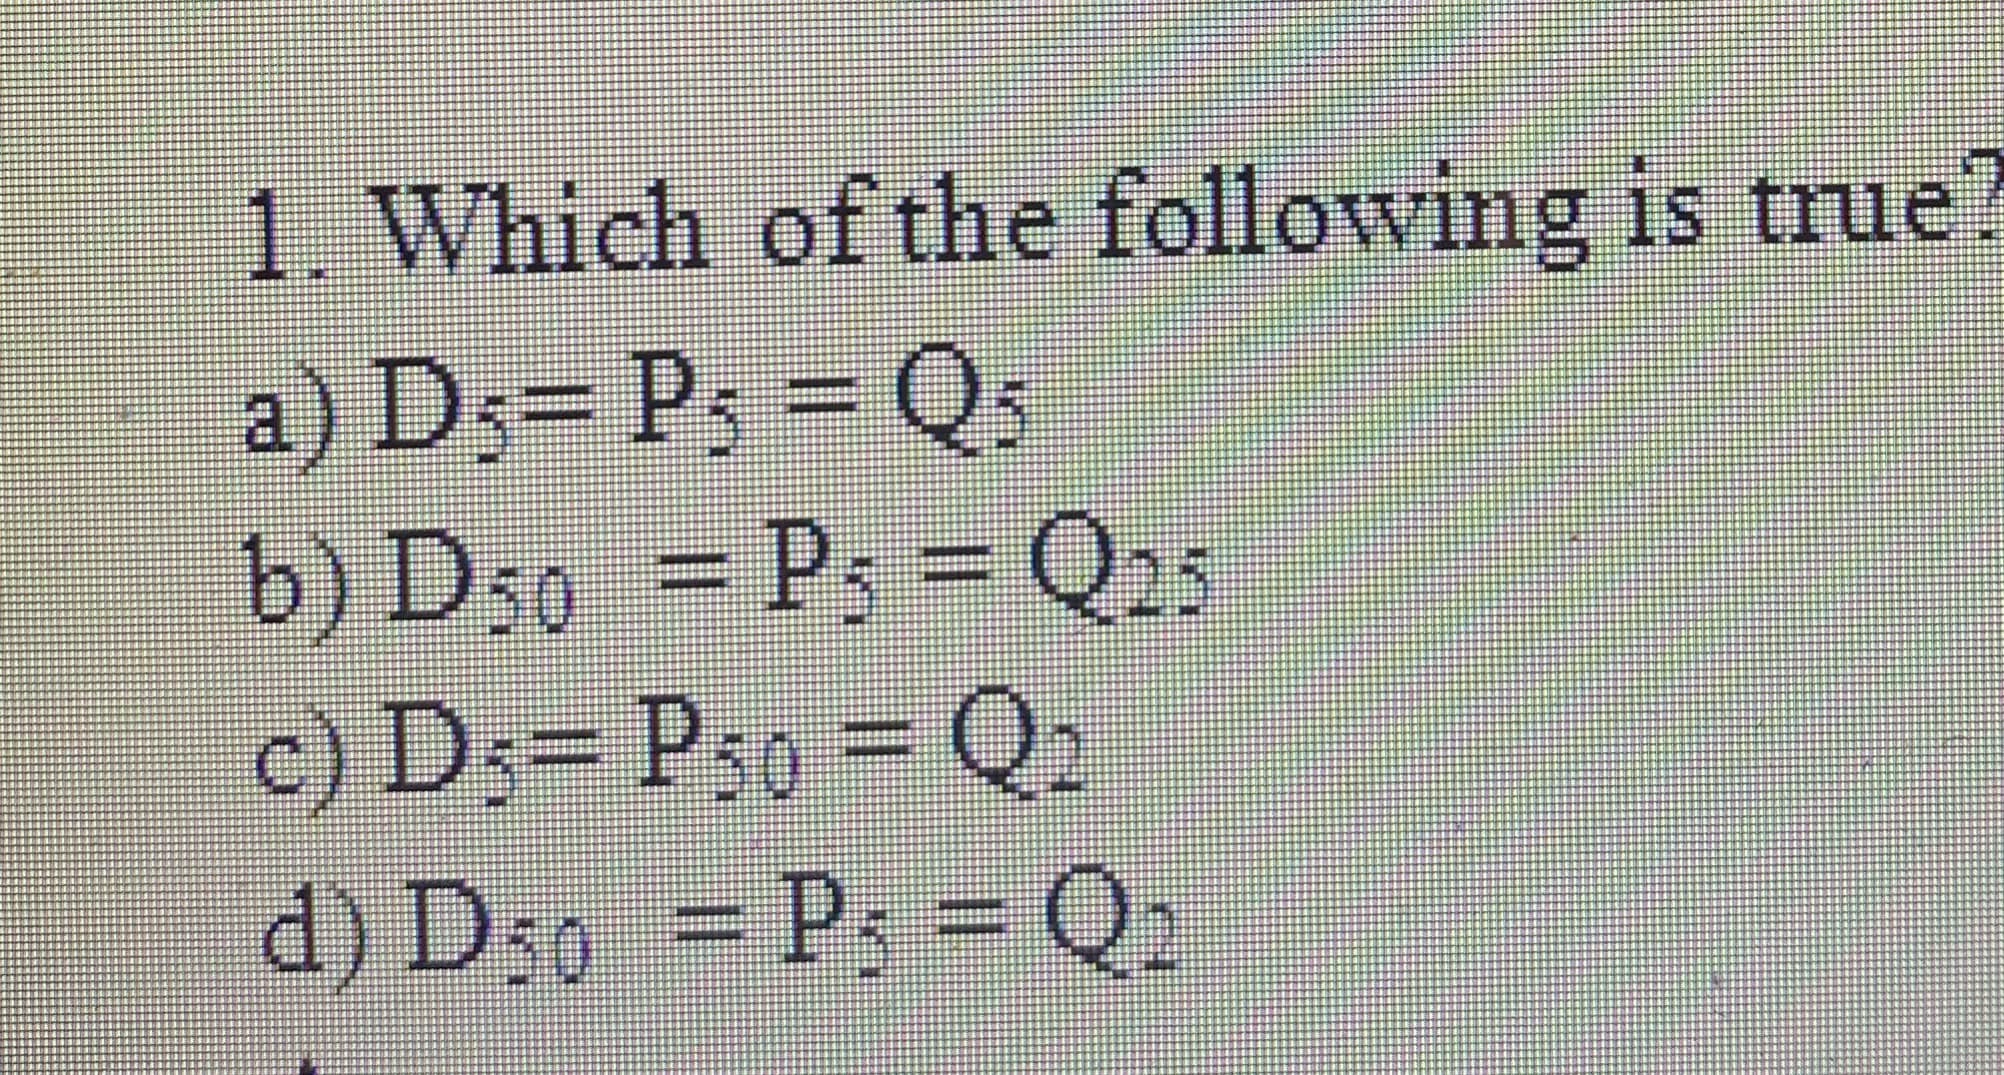 1. Which of the following is true
a) D;= Ps = Qs
b) D50 = P; = Q25
c) D;= Ps0 = Q2
%3D
